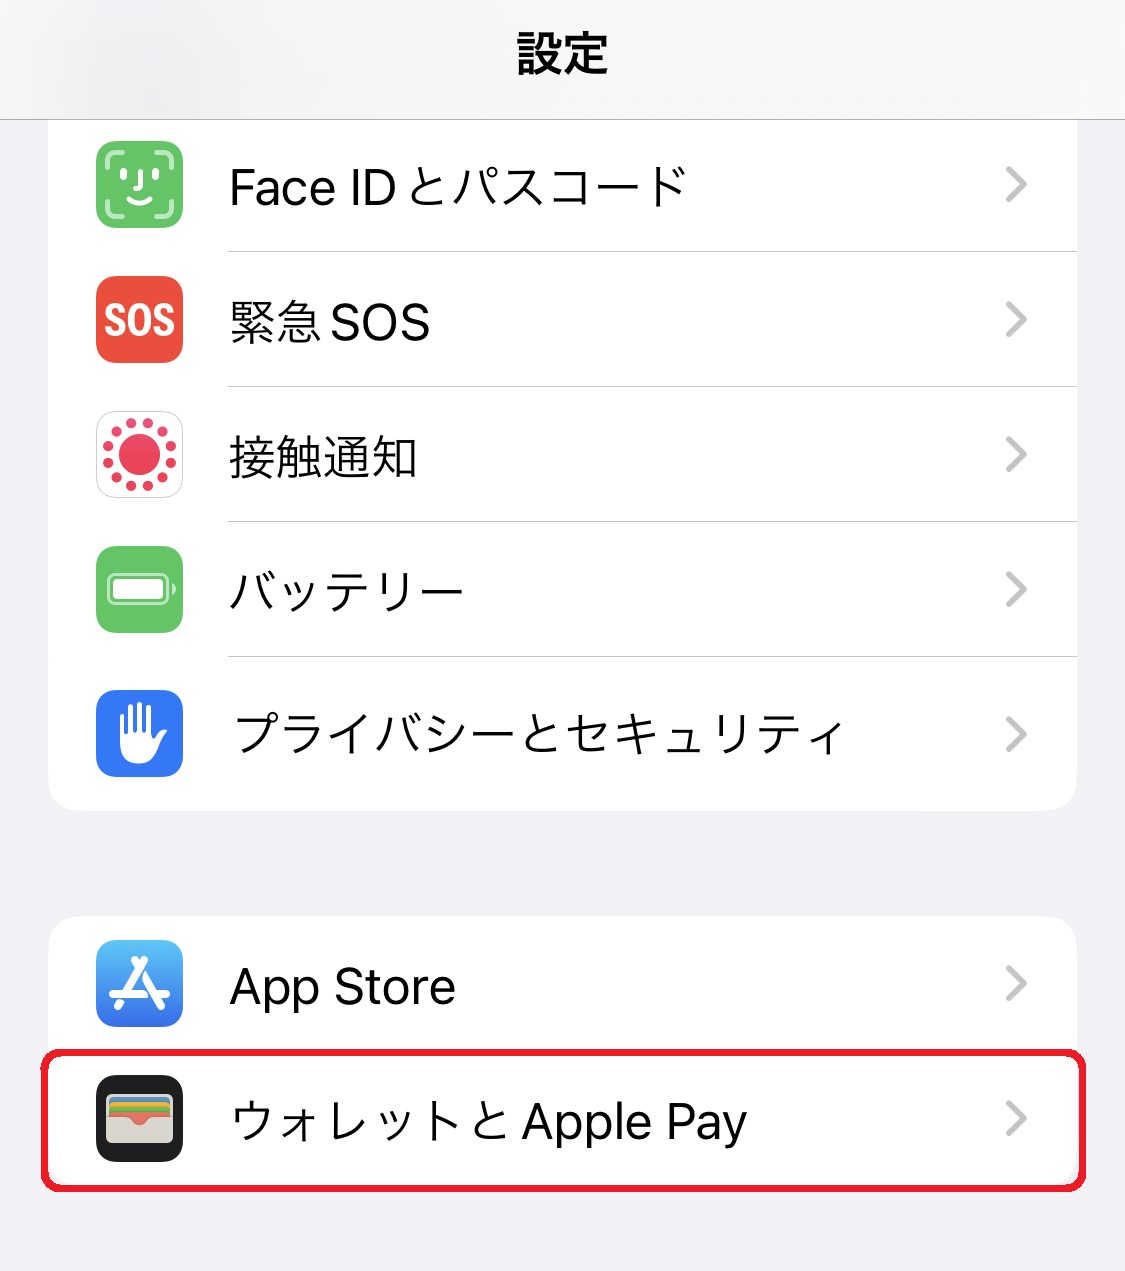 「設定」アプリを起動し、「ウォレットとApple Pay」をタップ